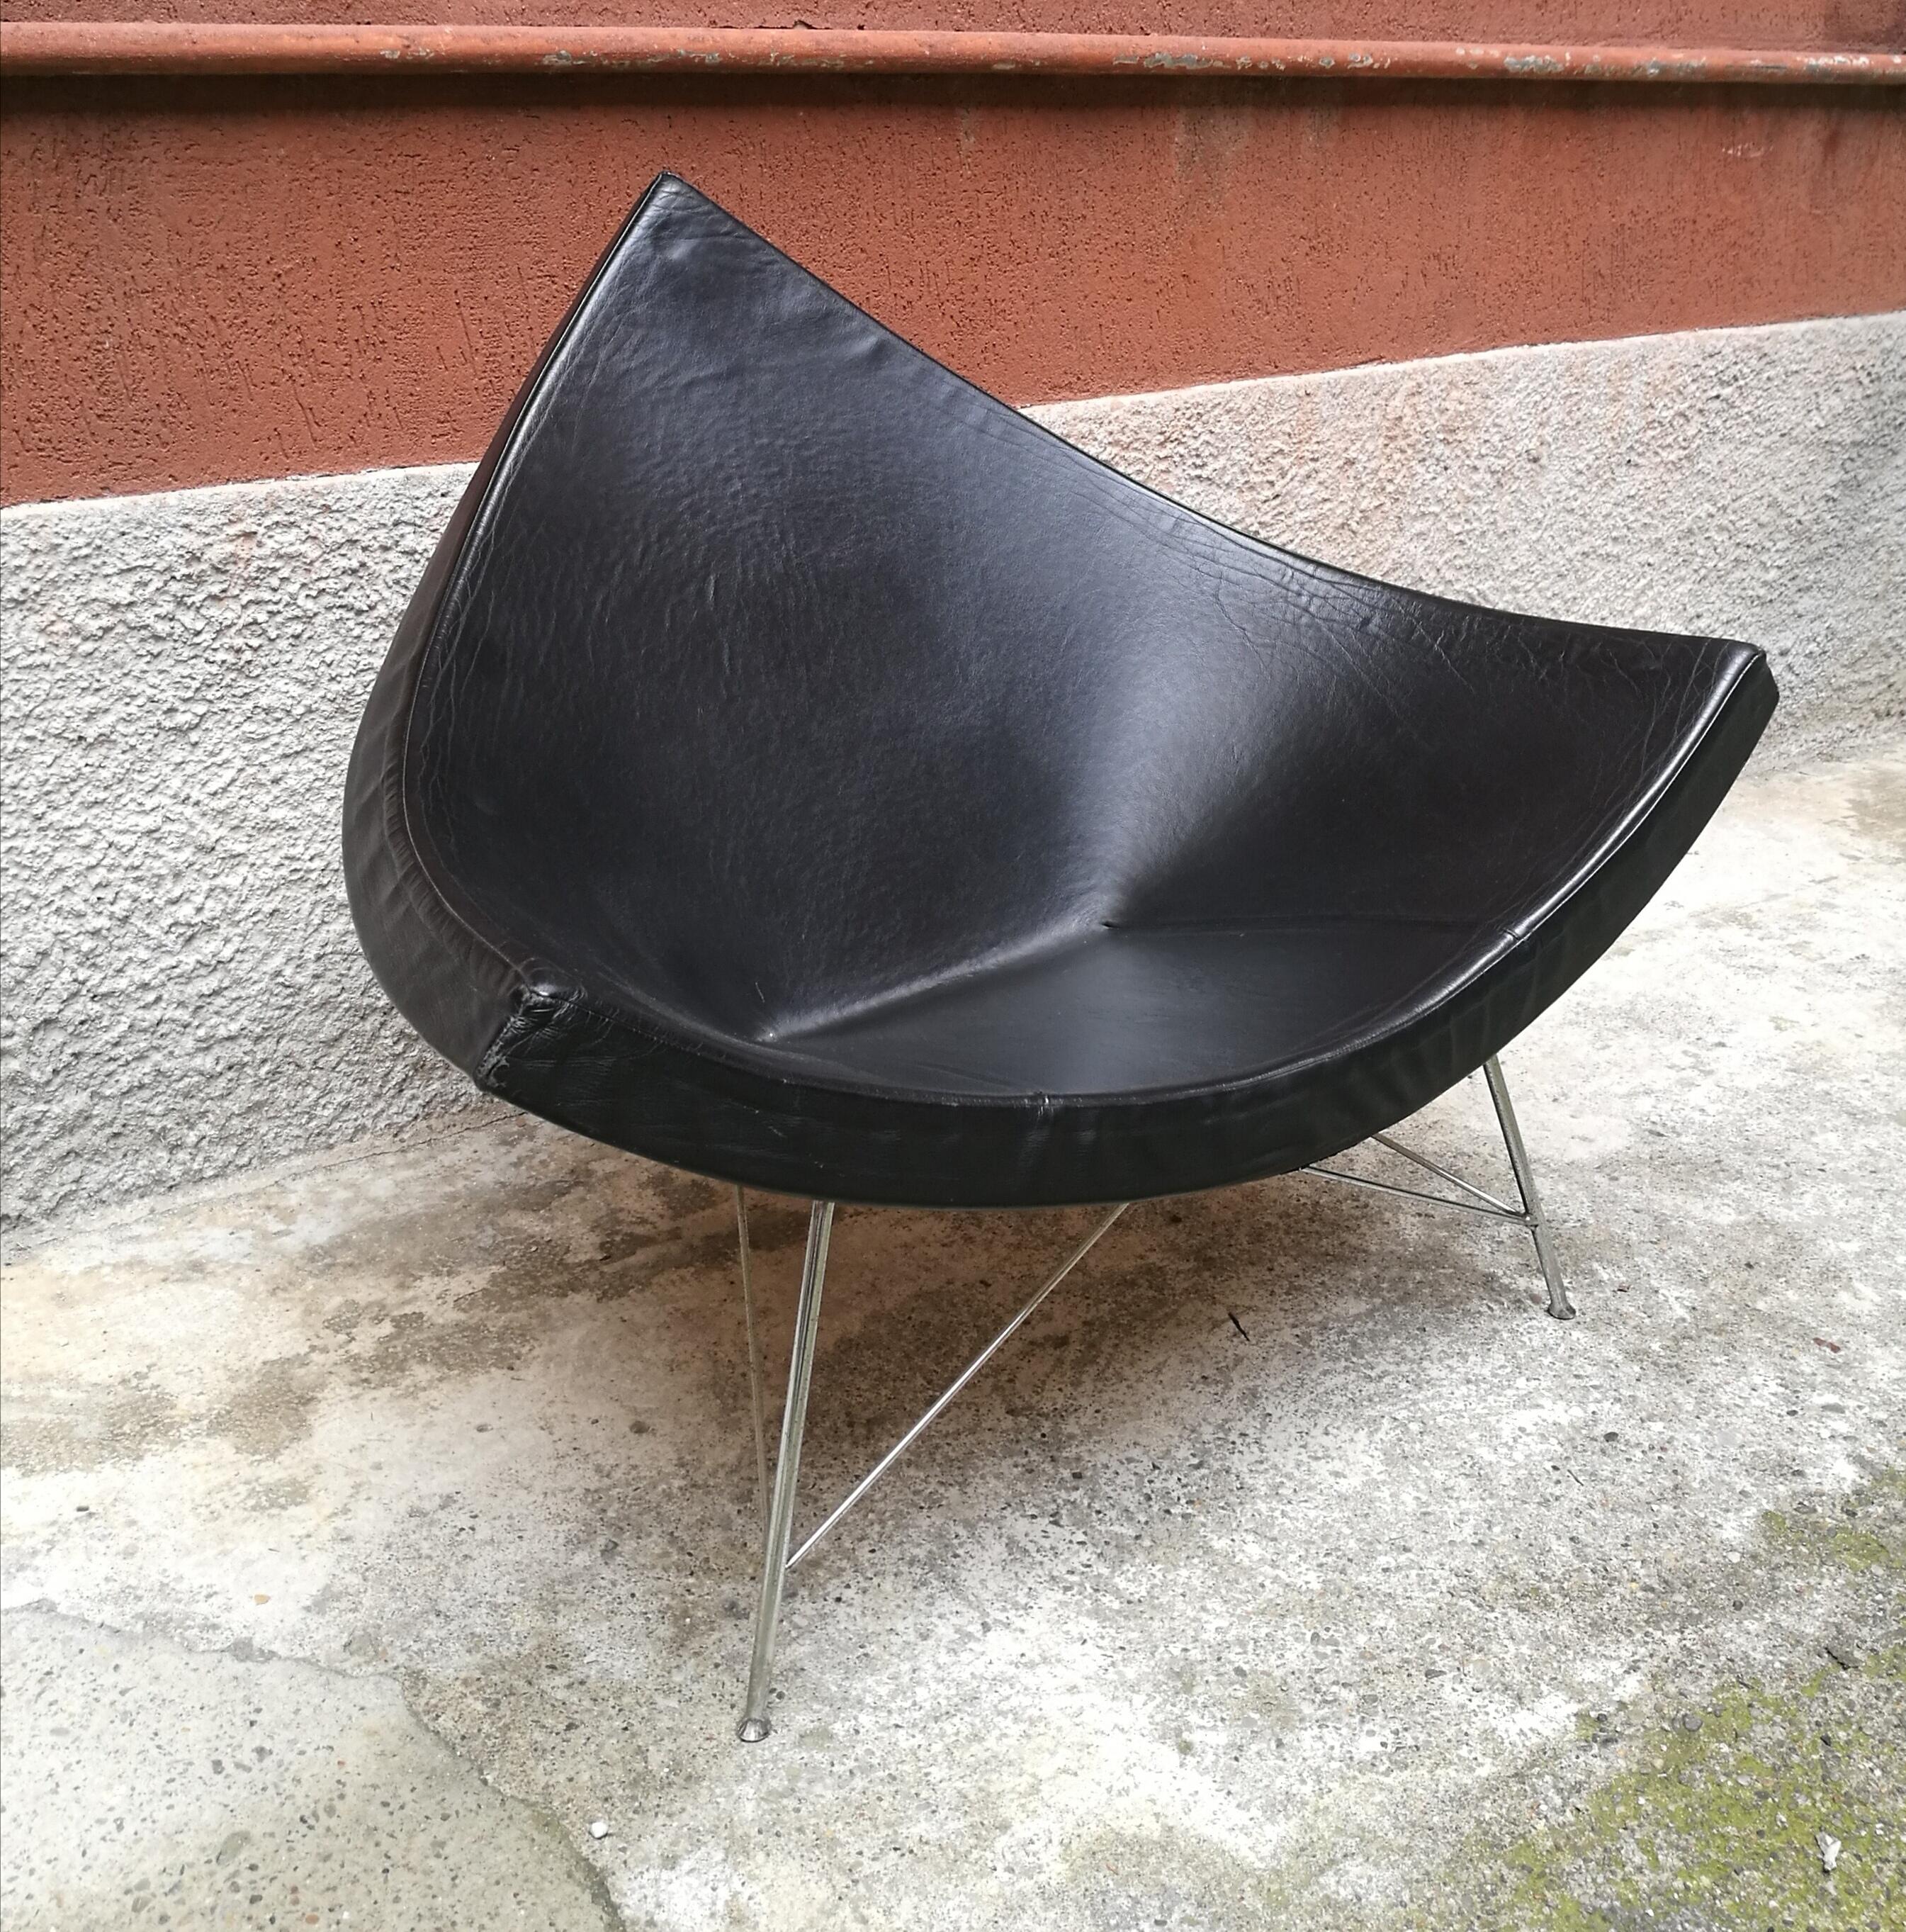 Schwarzer Sessel aus schwarzem Leder aus Kokosnussholz von George Nelson, von 1950 (Europäisch)